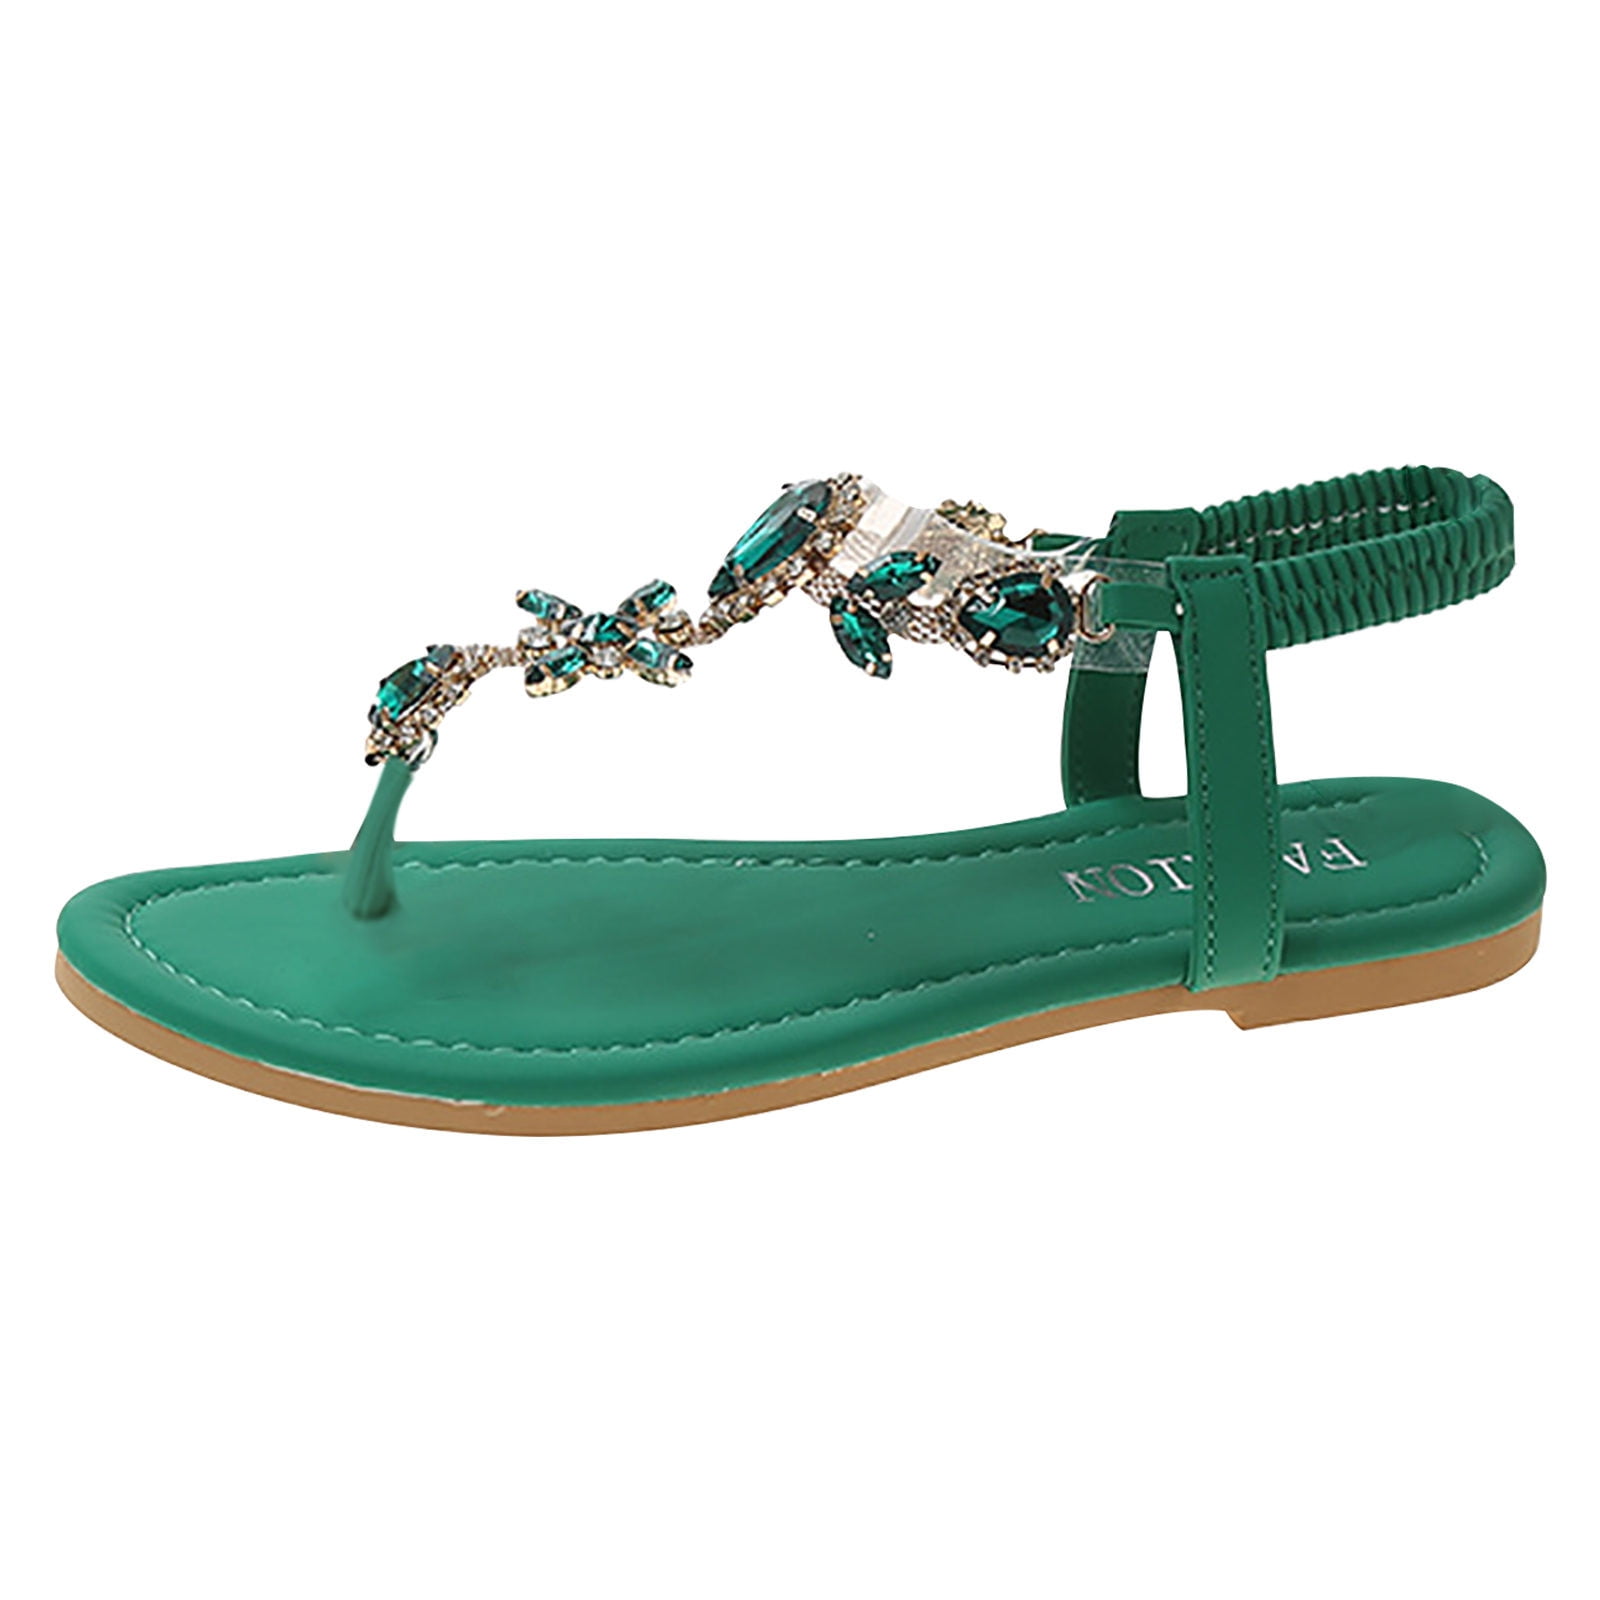 Women's Flat Sandals- Comfy Beach Sparkly Dressy Summer Womens Sandals Green Size 6 - Walmart.com